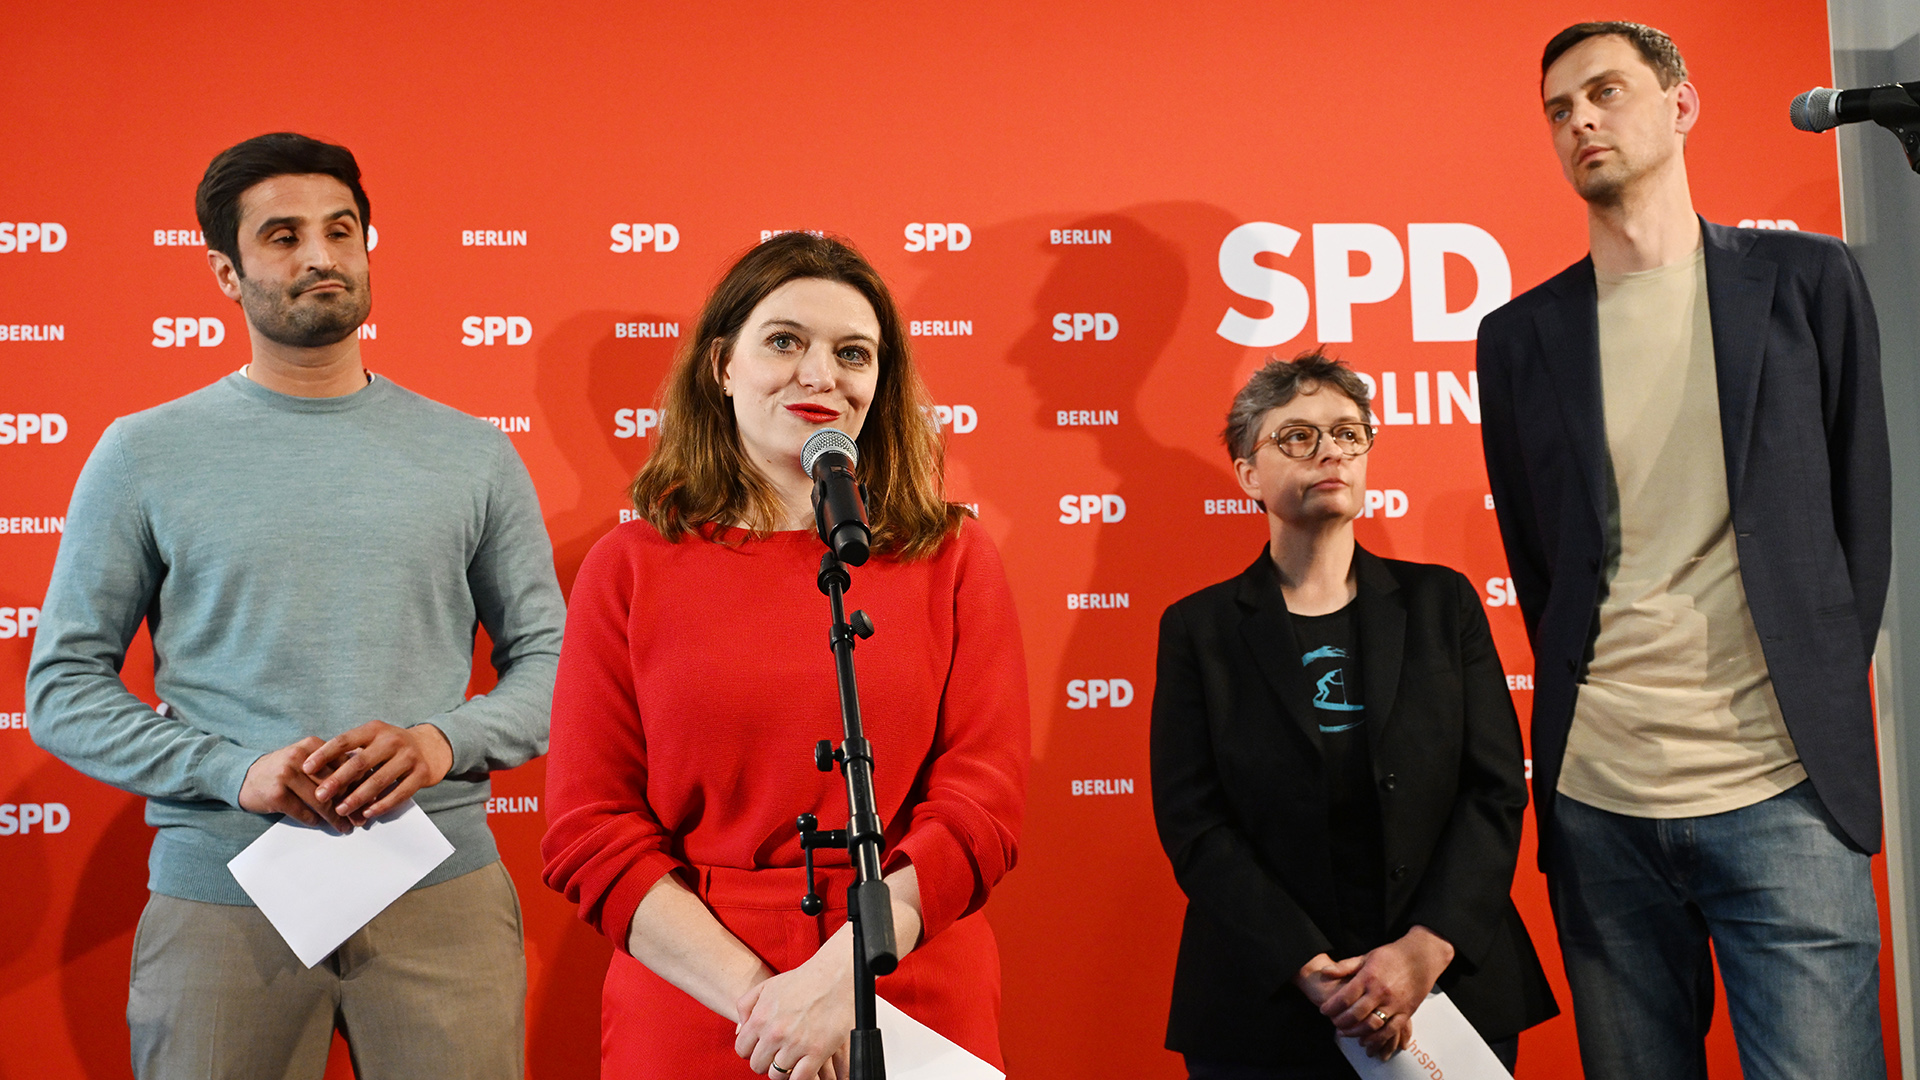 Stichwahl bei der SPD: Zwei Spitzenduos ringen um die Macht. (Quelle: IMAGO/Funke Foto Services)